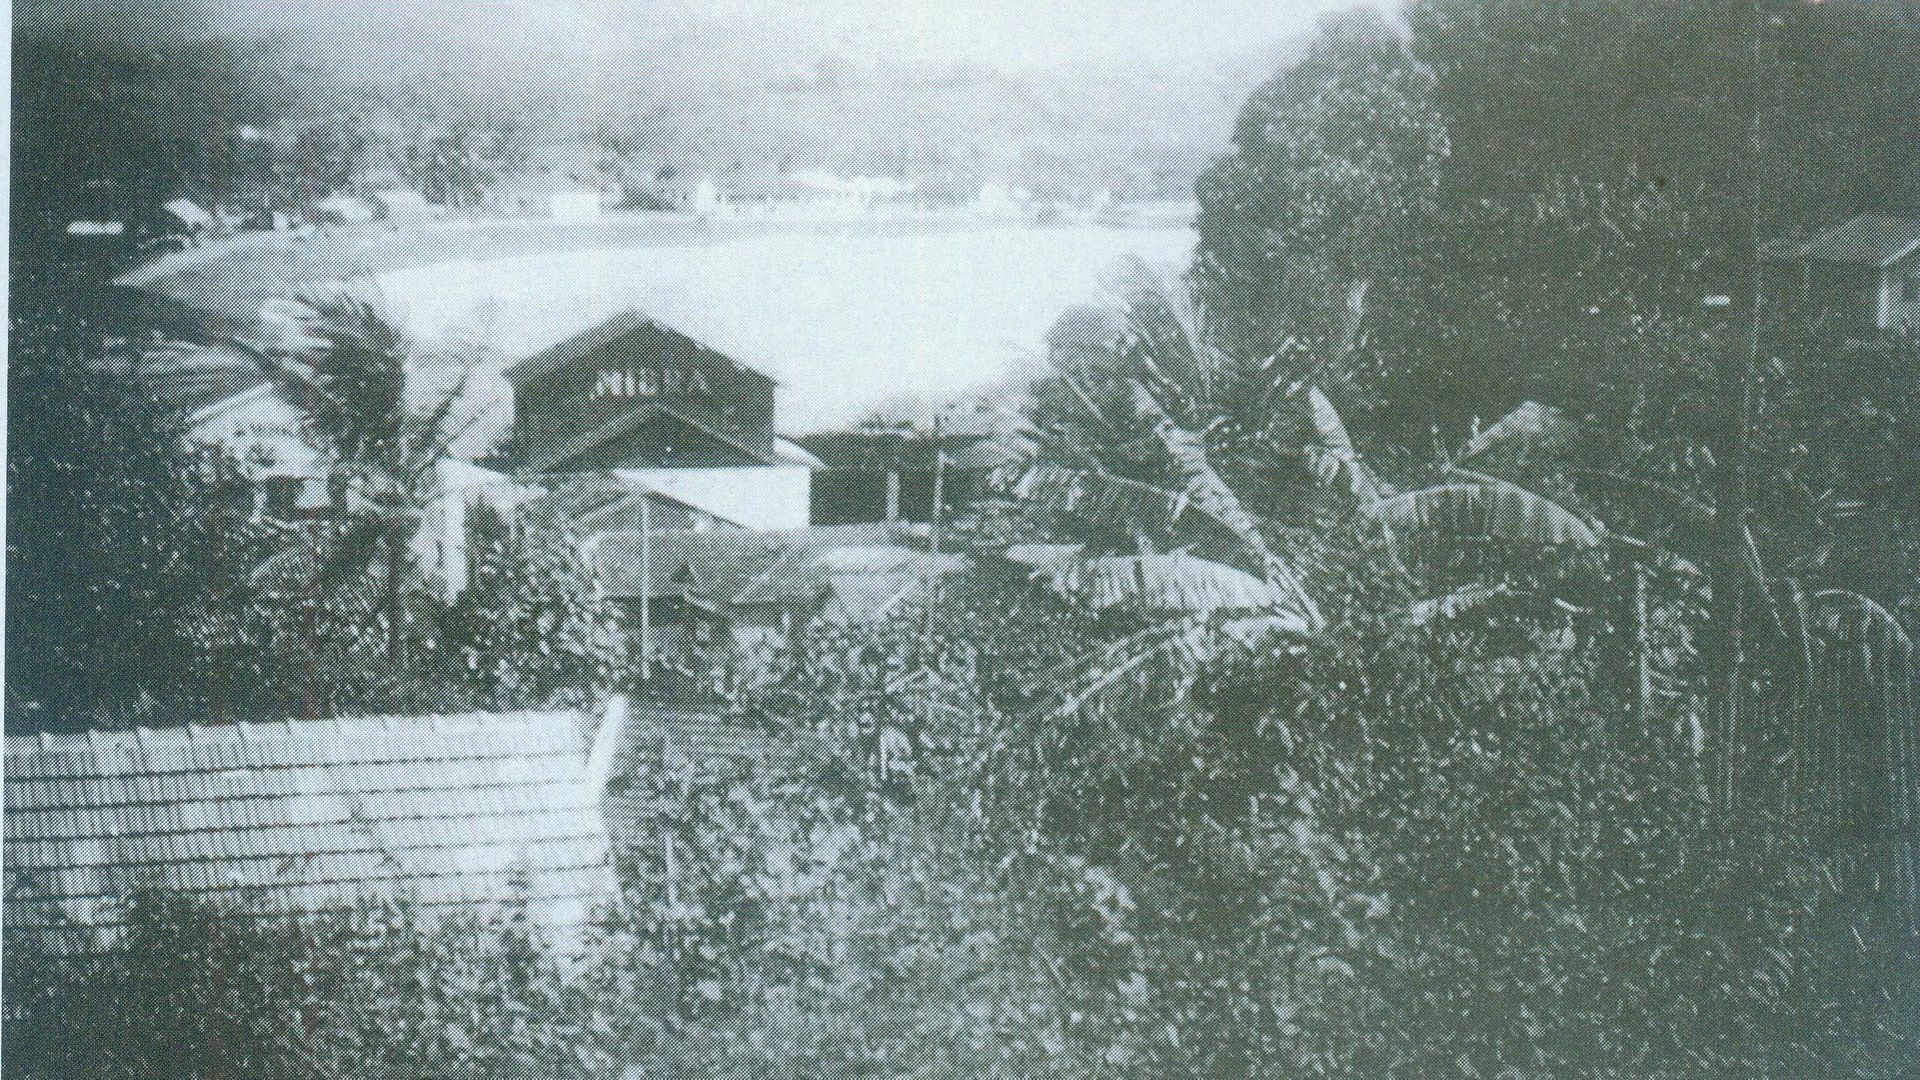 Vista da Prainha de Muquiçaba, com o galpão da Mibra à frente, na década de 1940